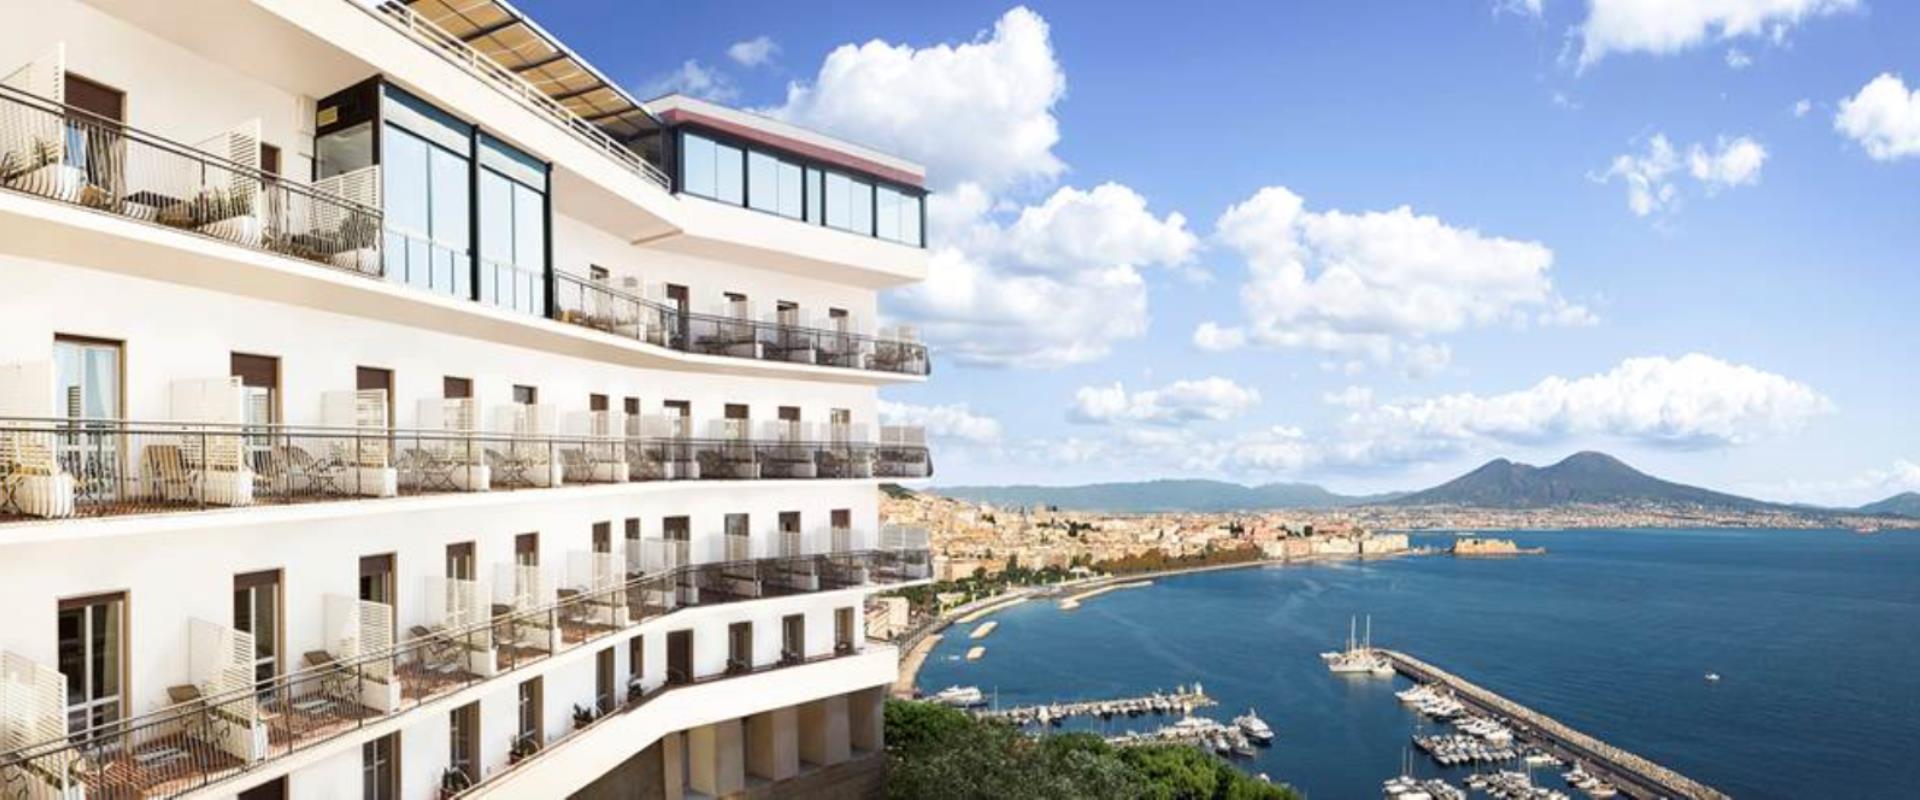 Неаполь Отель Paradiso. Вид на залив Неаполя Posillipo отель